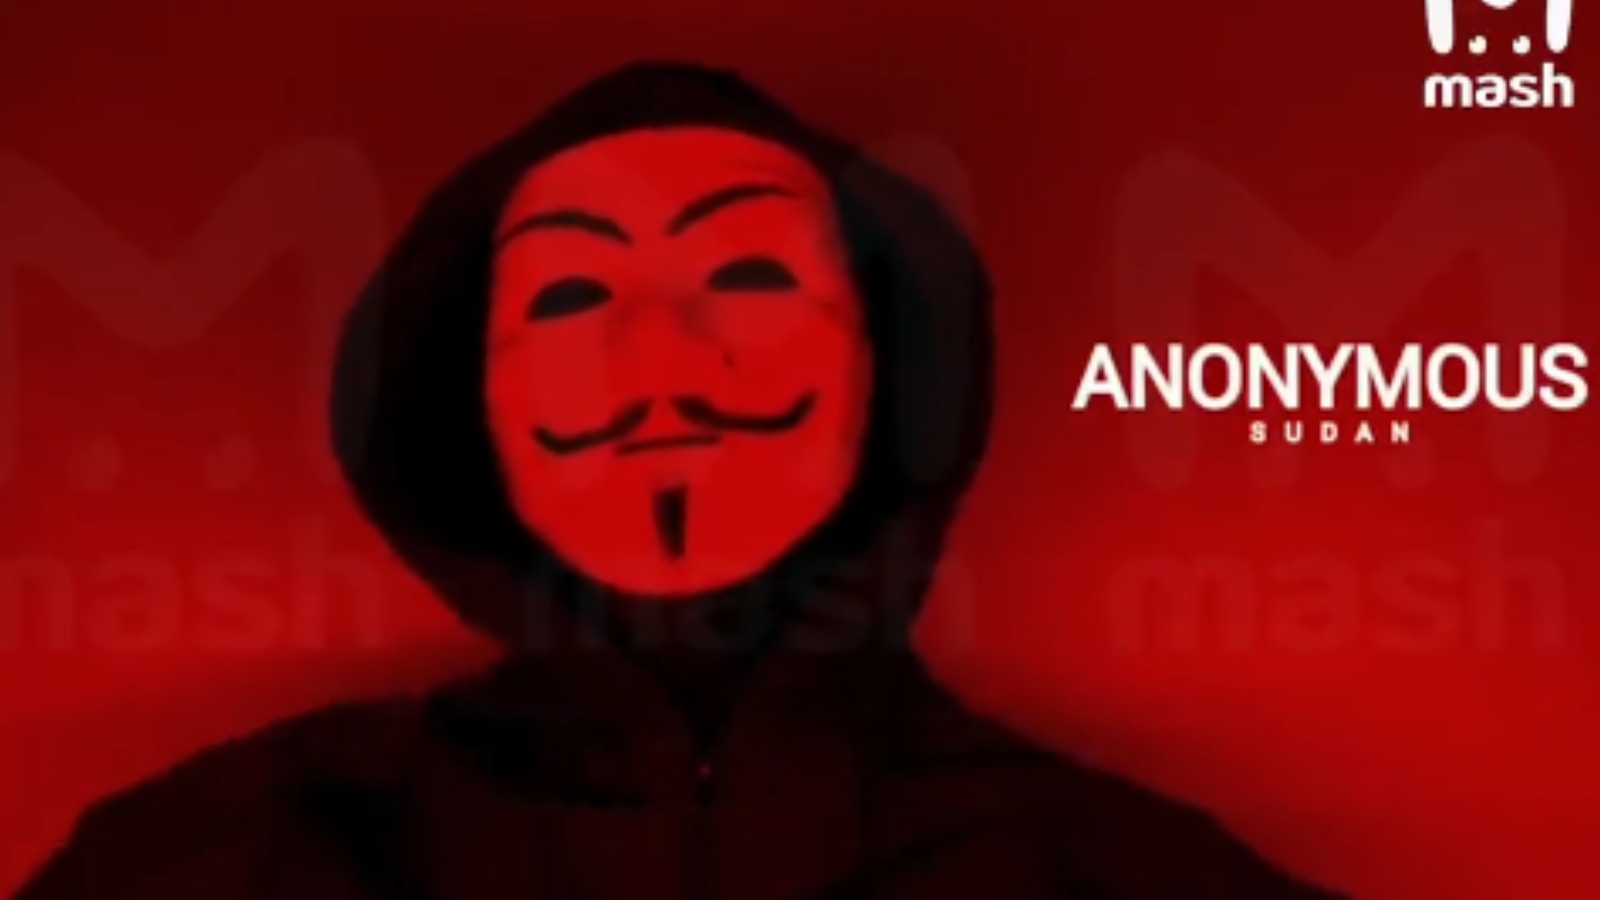 anonymous-sudan-killnet-reevil-cyber-att